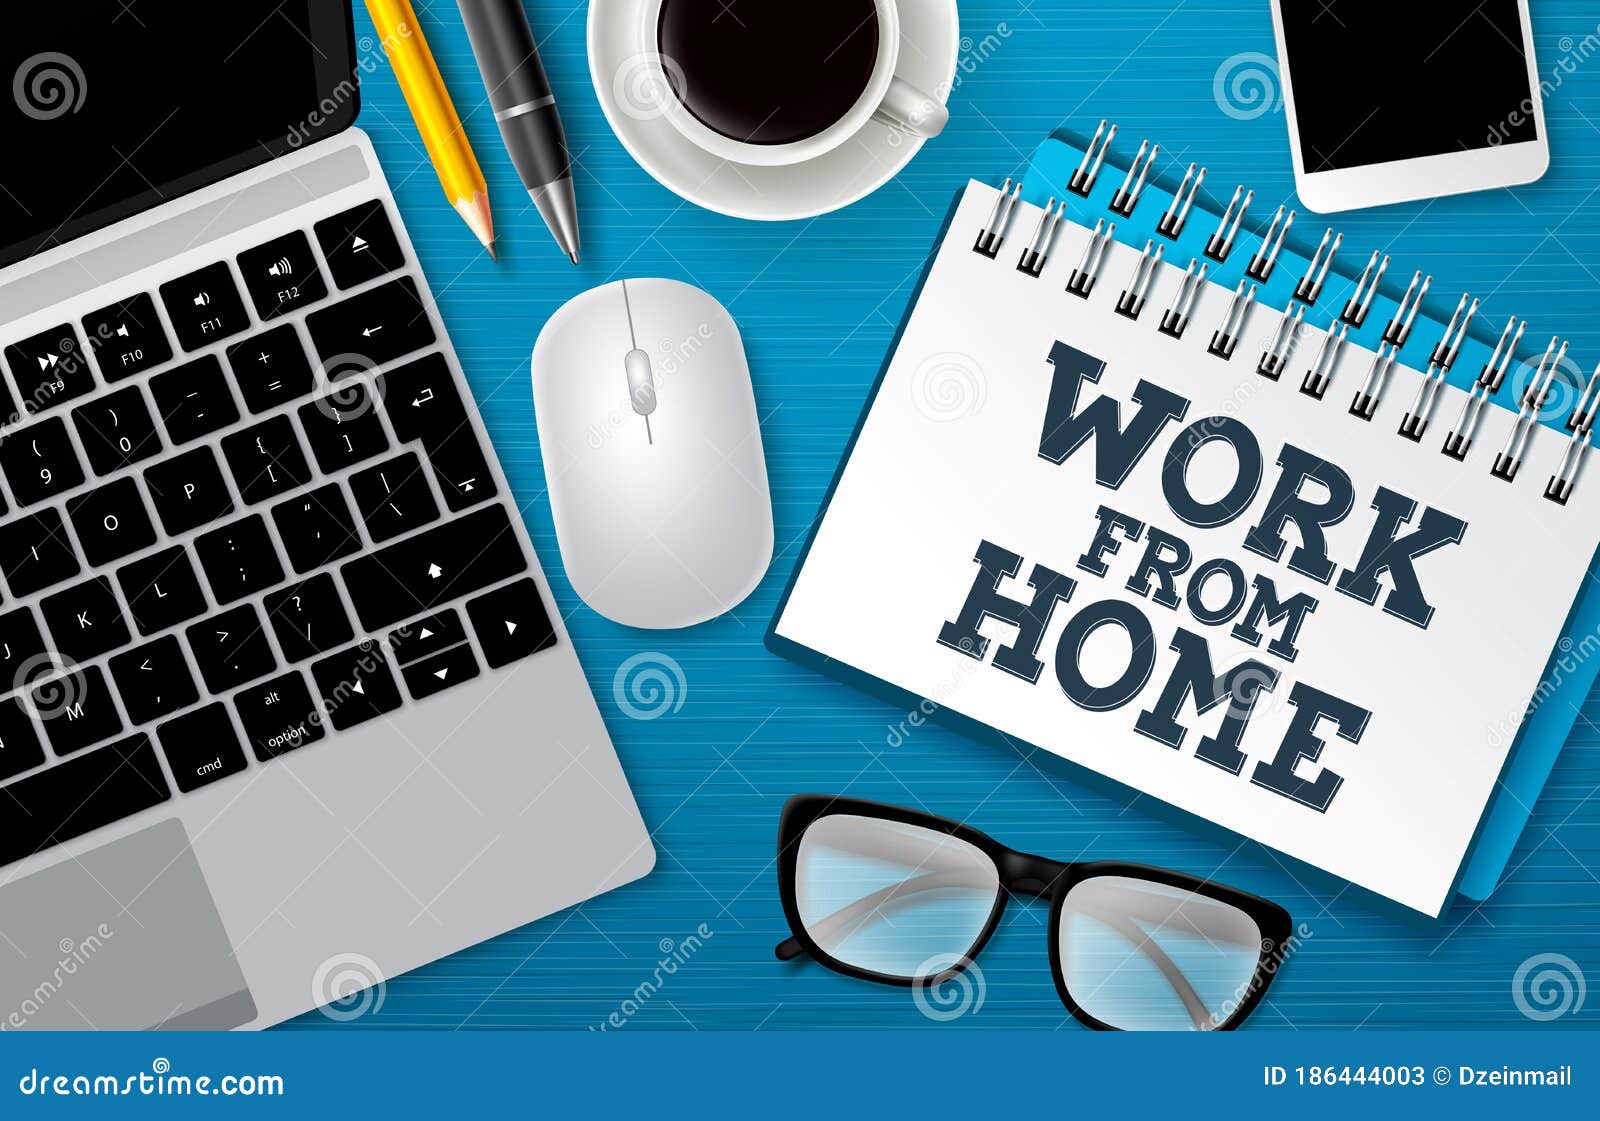 Làm việc tại nhà (Work from Home): Việc làm tại nhà đang trở thành xu hướng mới, giúp giữ an toàn cho bản thân và xã hội trong thời điểm hiện tại. Đến với hình ảnh liên quan đến từ khóa \